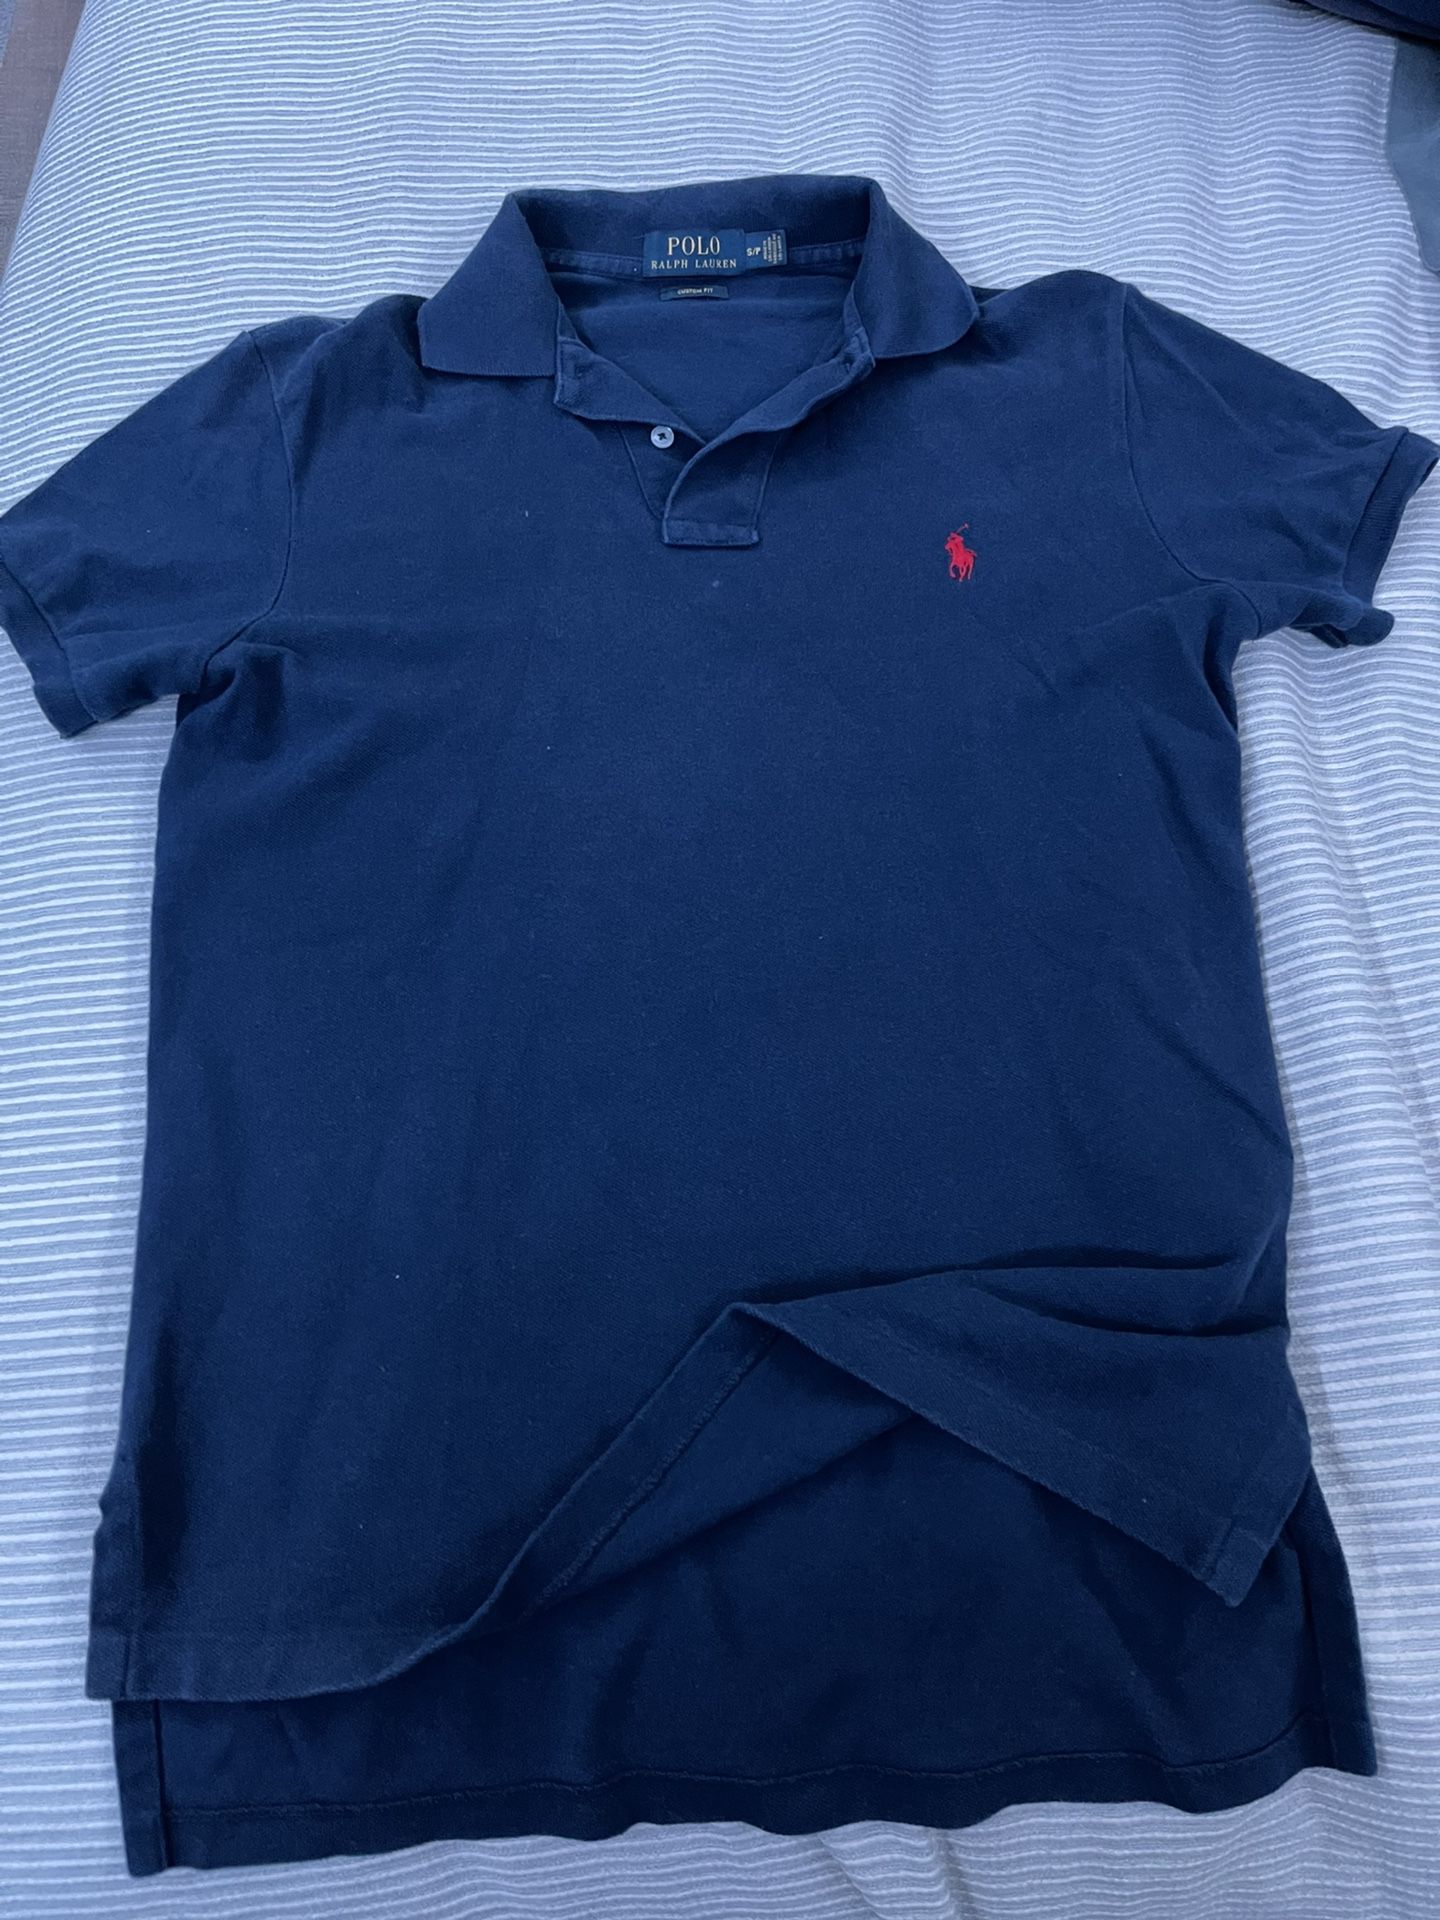 Polo Collared Shirt